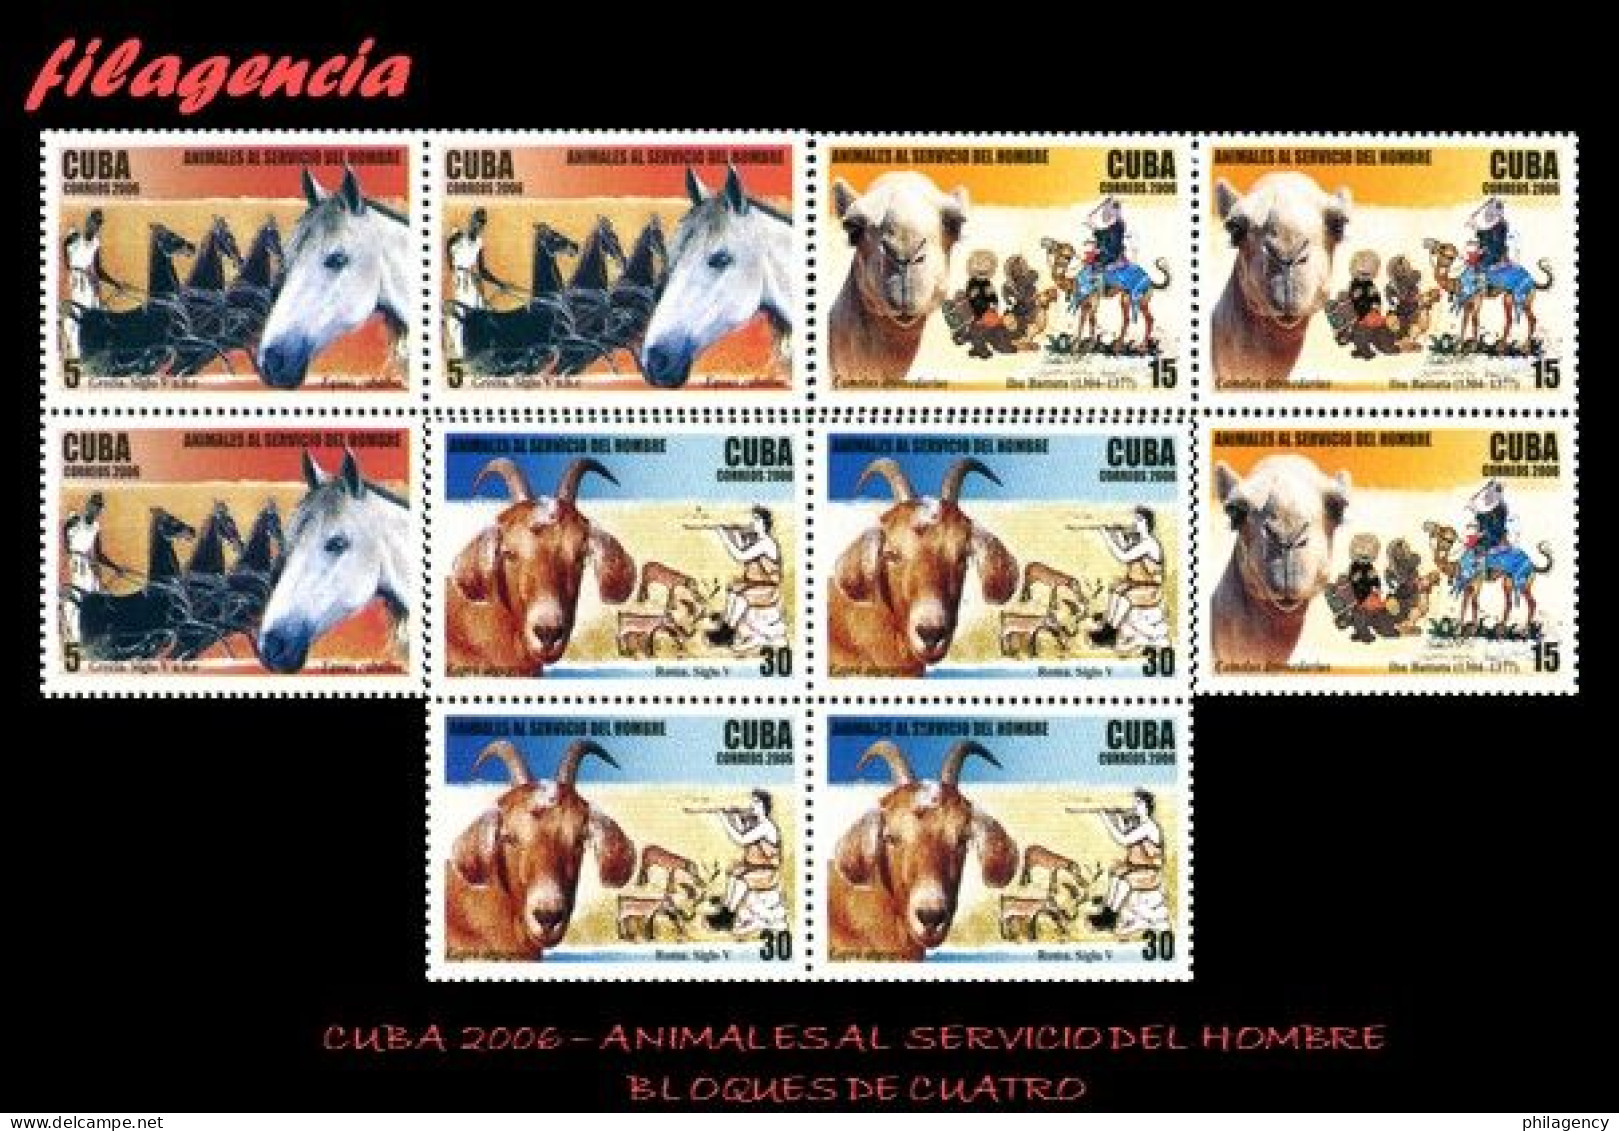 CUBA. BLOQUES DE CUATRO. 2006-24 ANIMALES AL SERVICIO DEL HOMBRE - Nuovi